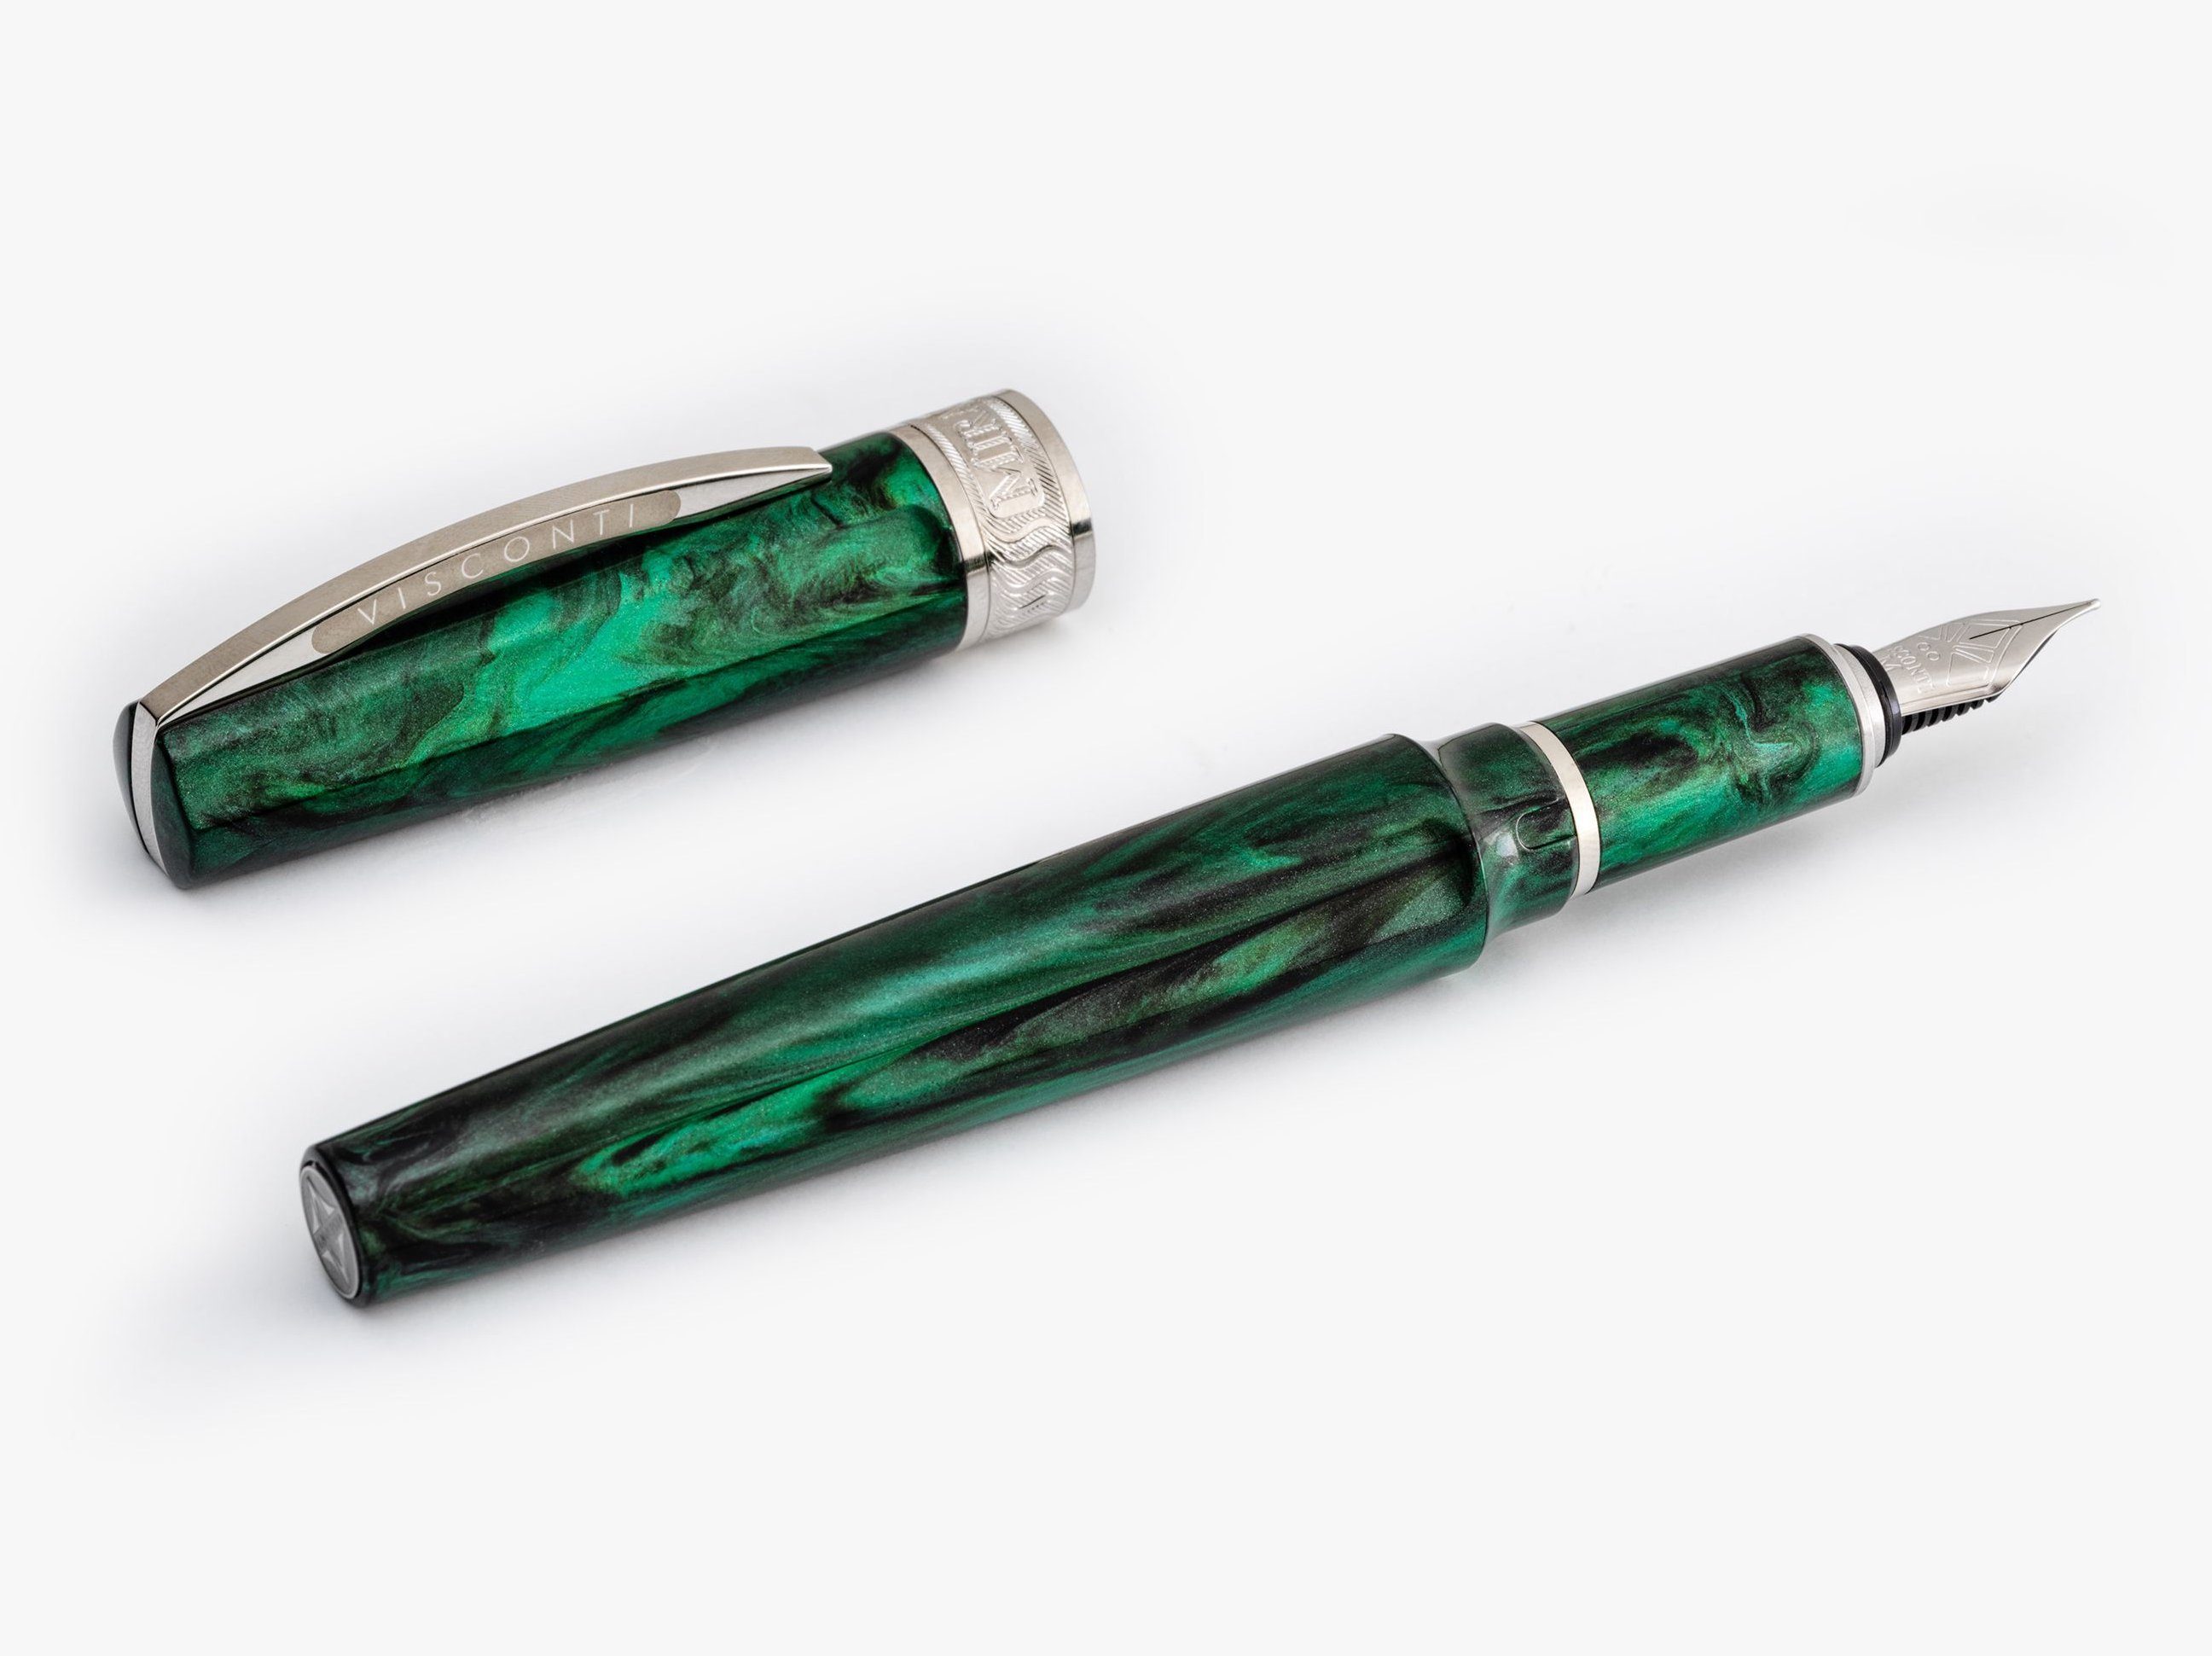 Visconti Füllfederhalter Visconti Mirage Füllfederhalter Emerald Fountain Pen verschiedene, (kein Set) Emerald M